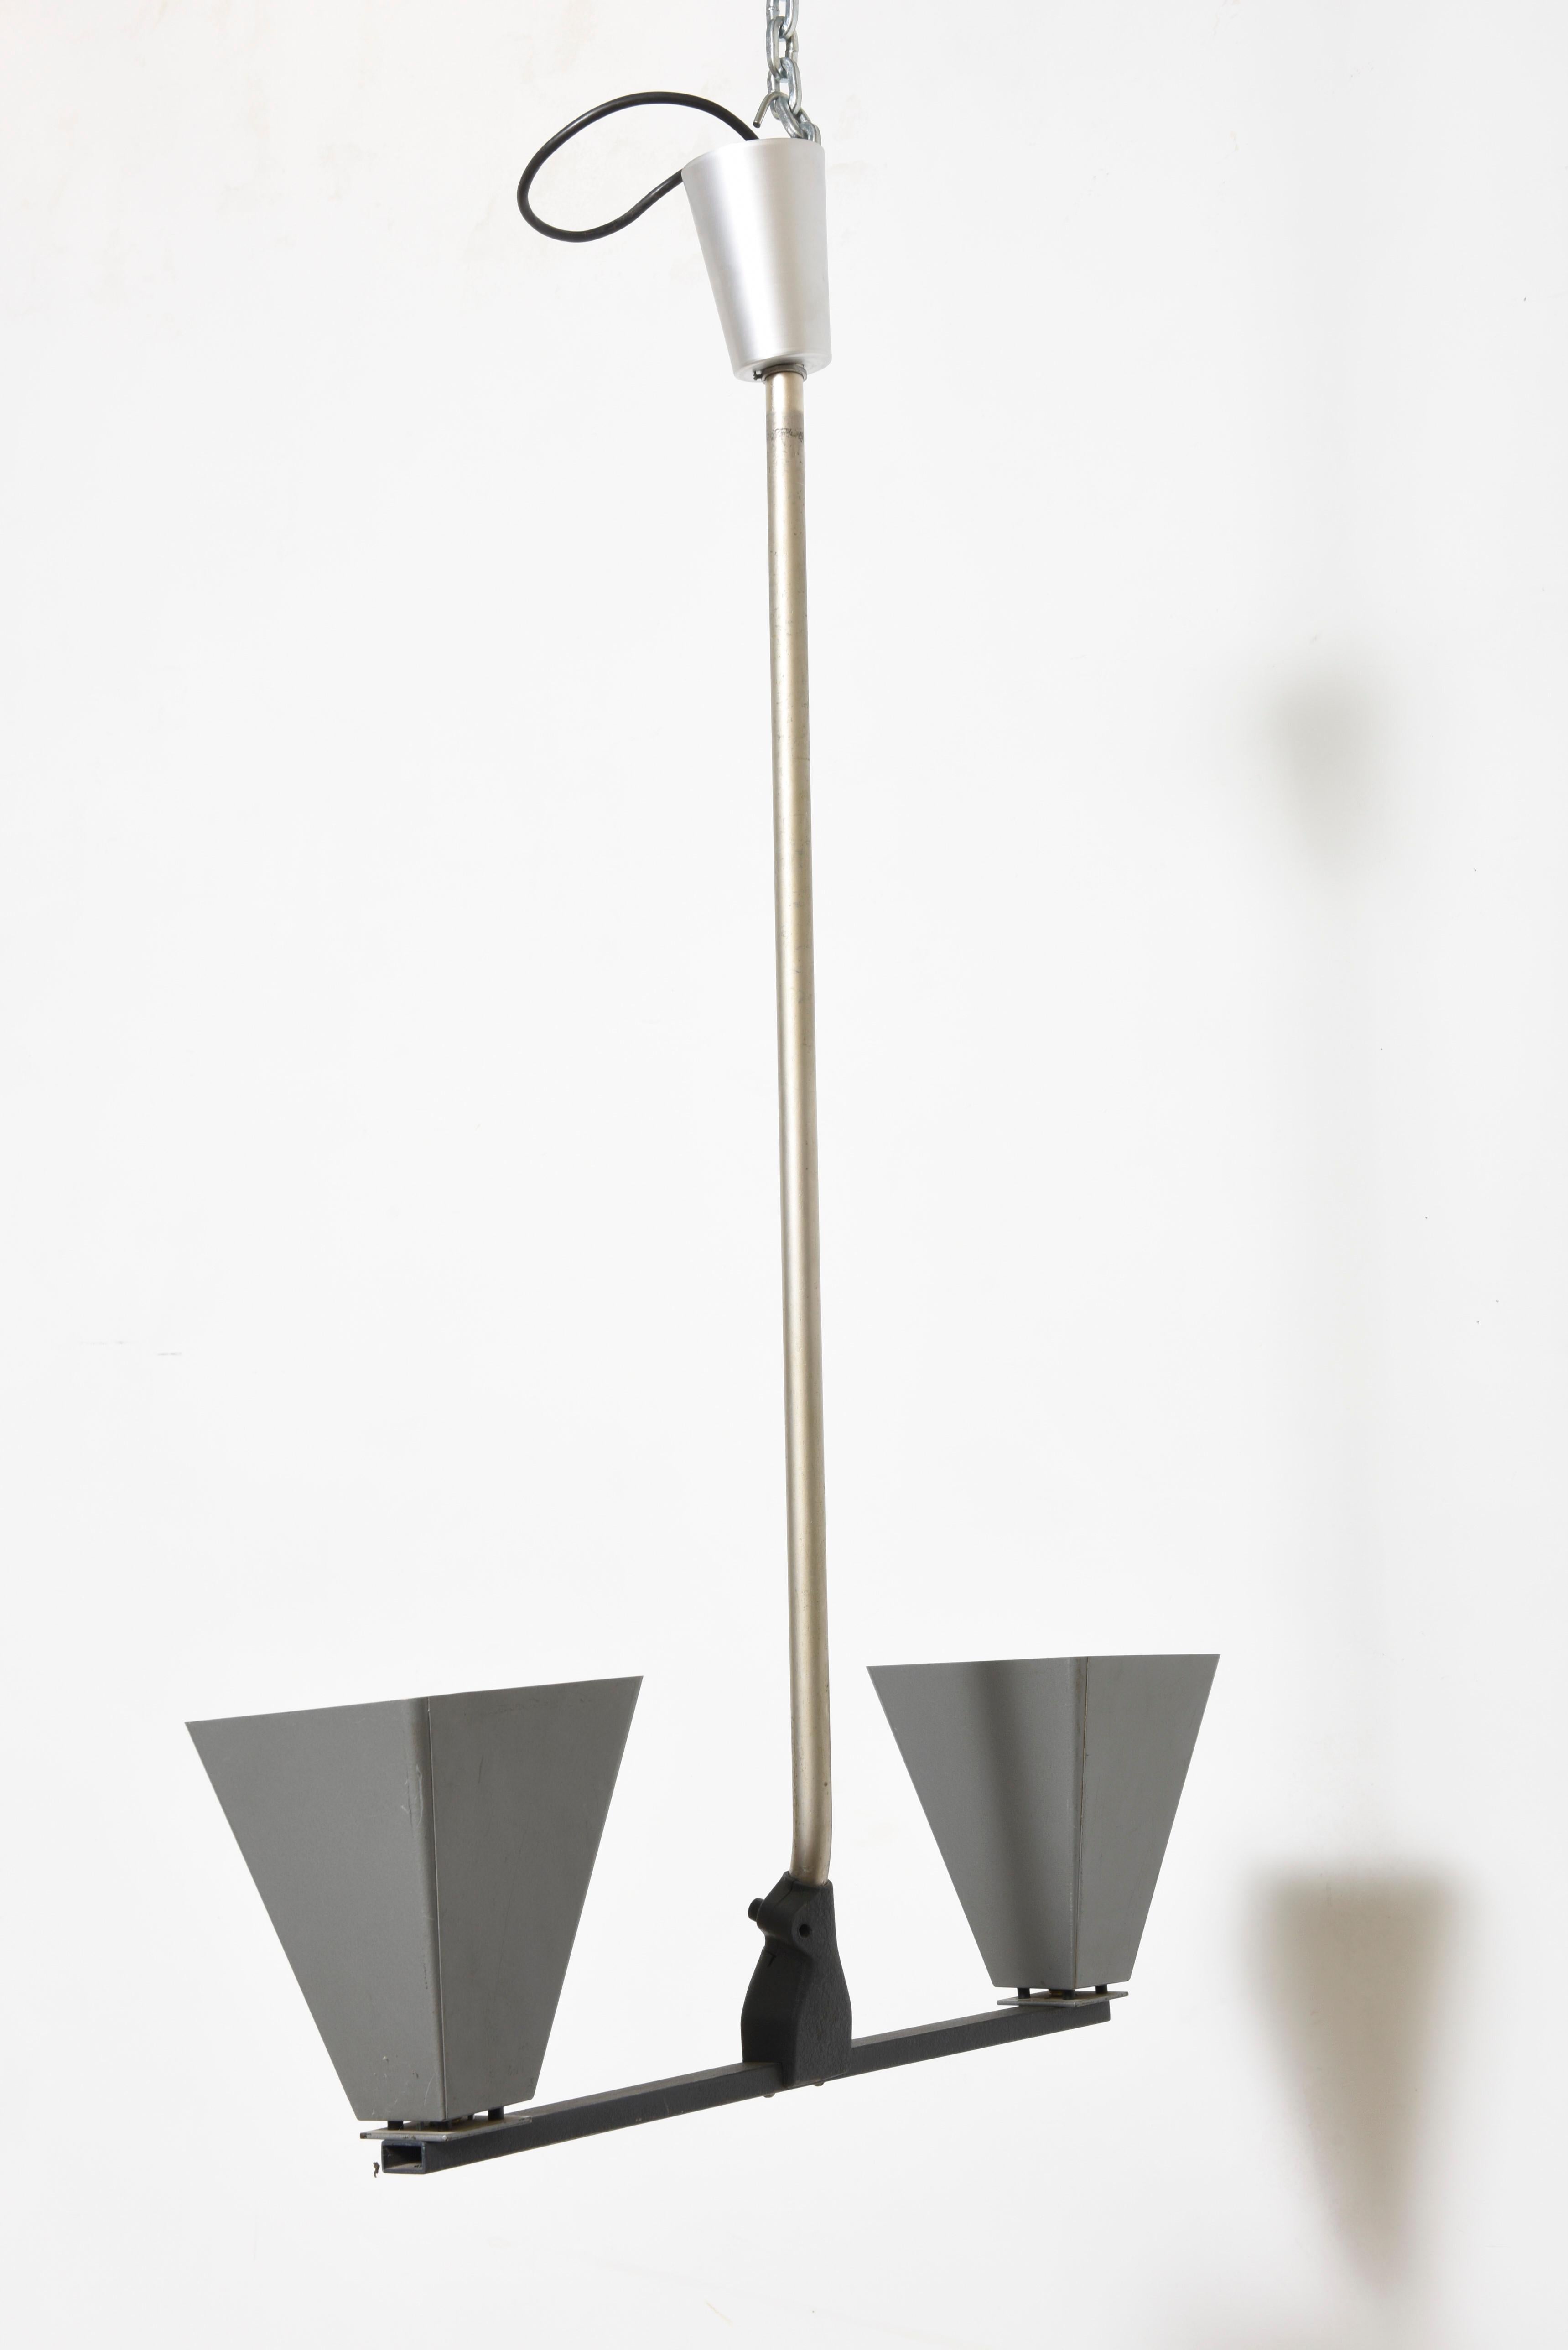 Luminaires industriels à suspension pyramidale, vers 1960, France. Deux disponibles en état original, recâblés E27 usage US. Expédition complémentaire.